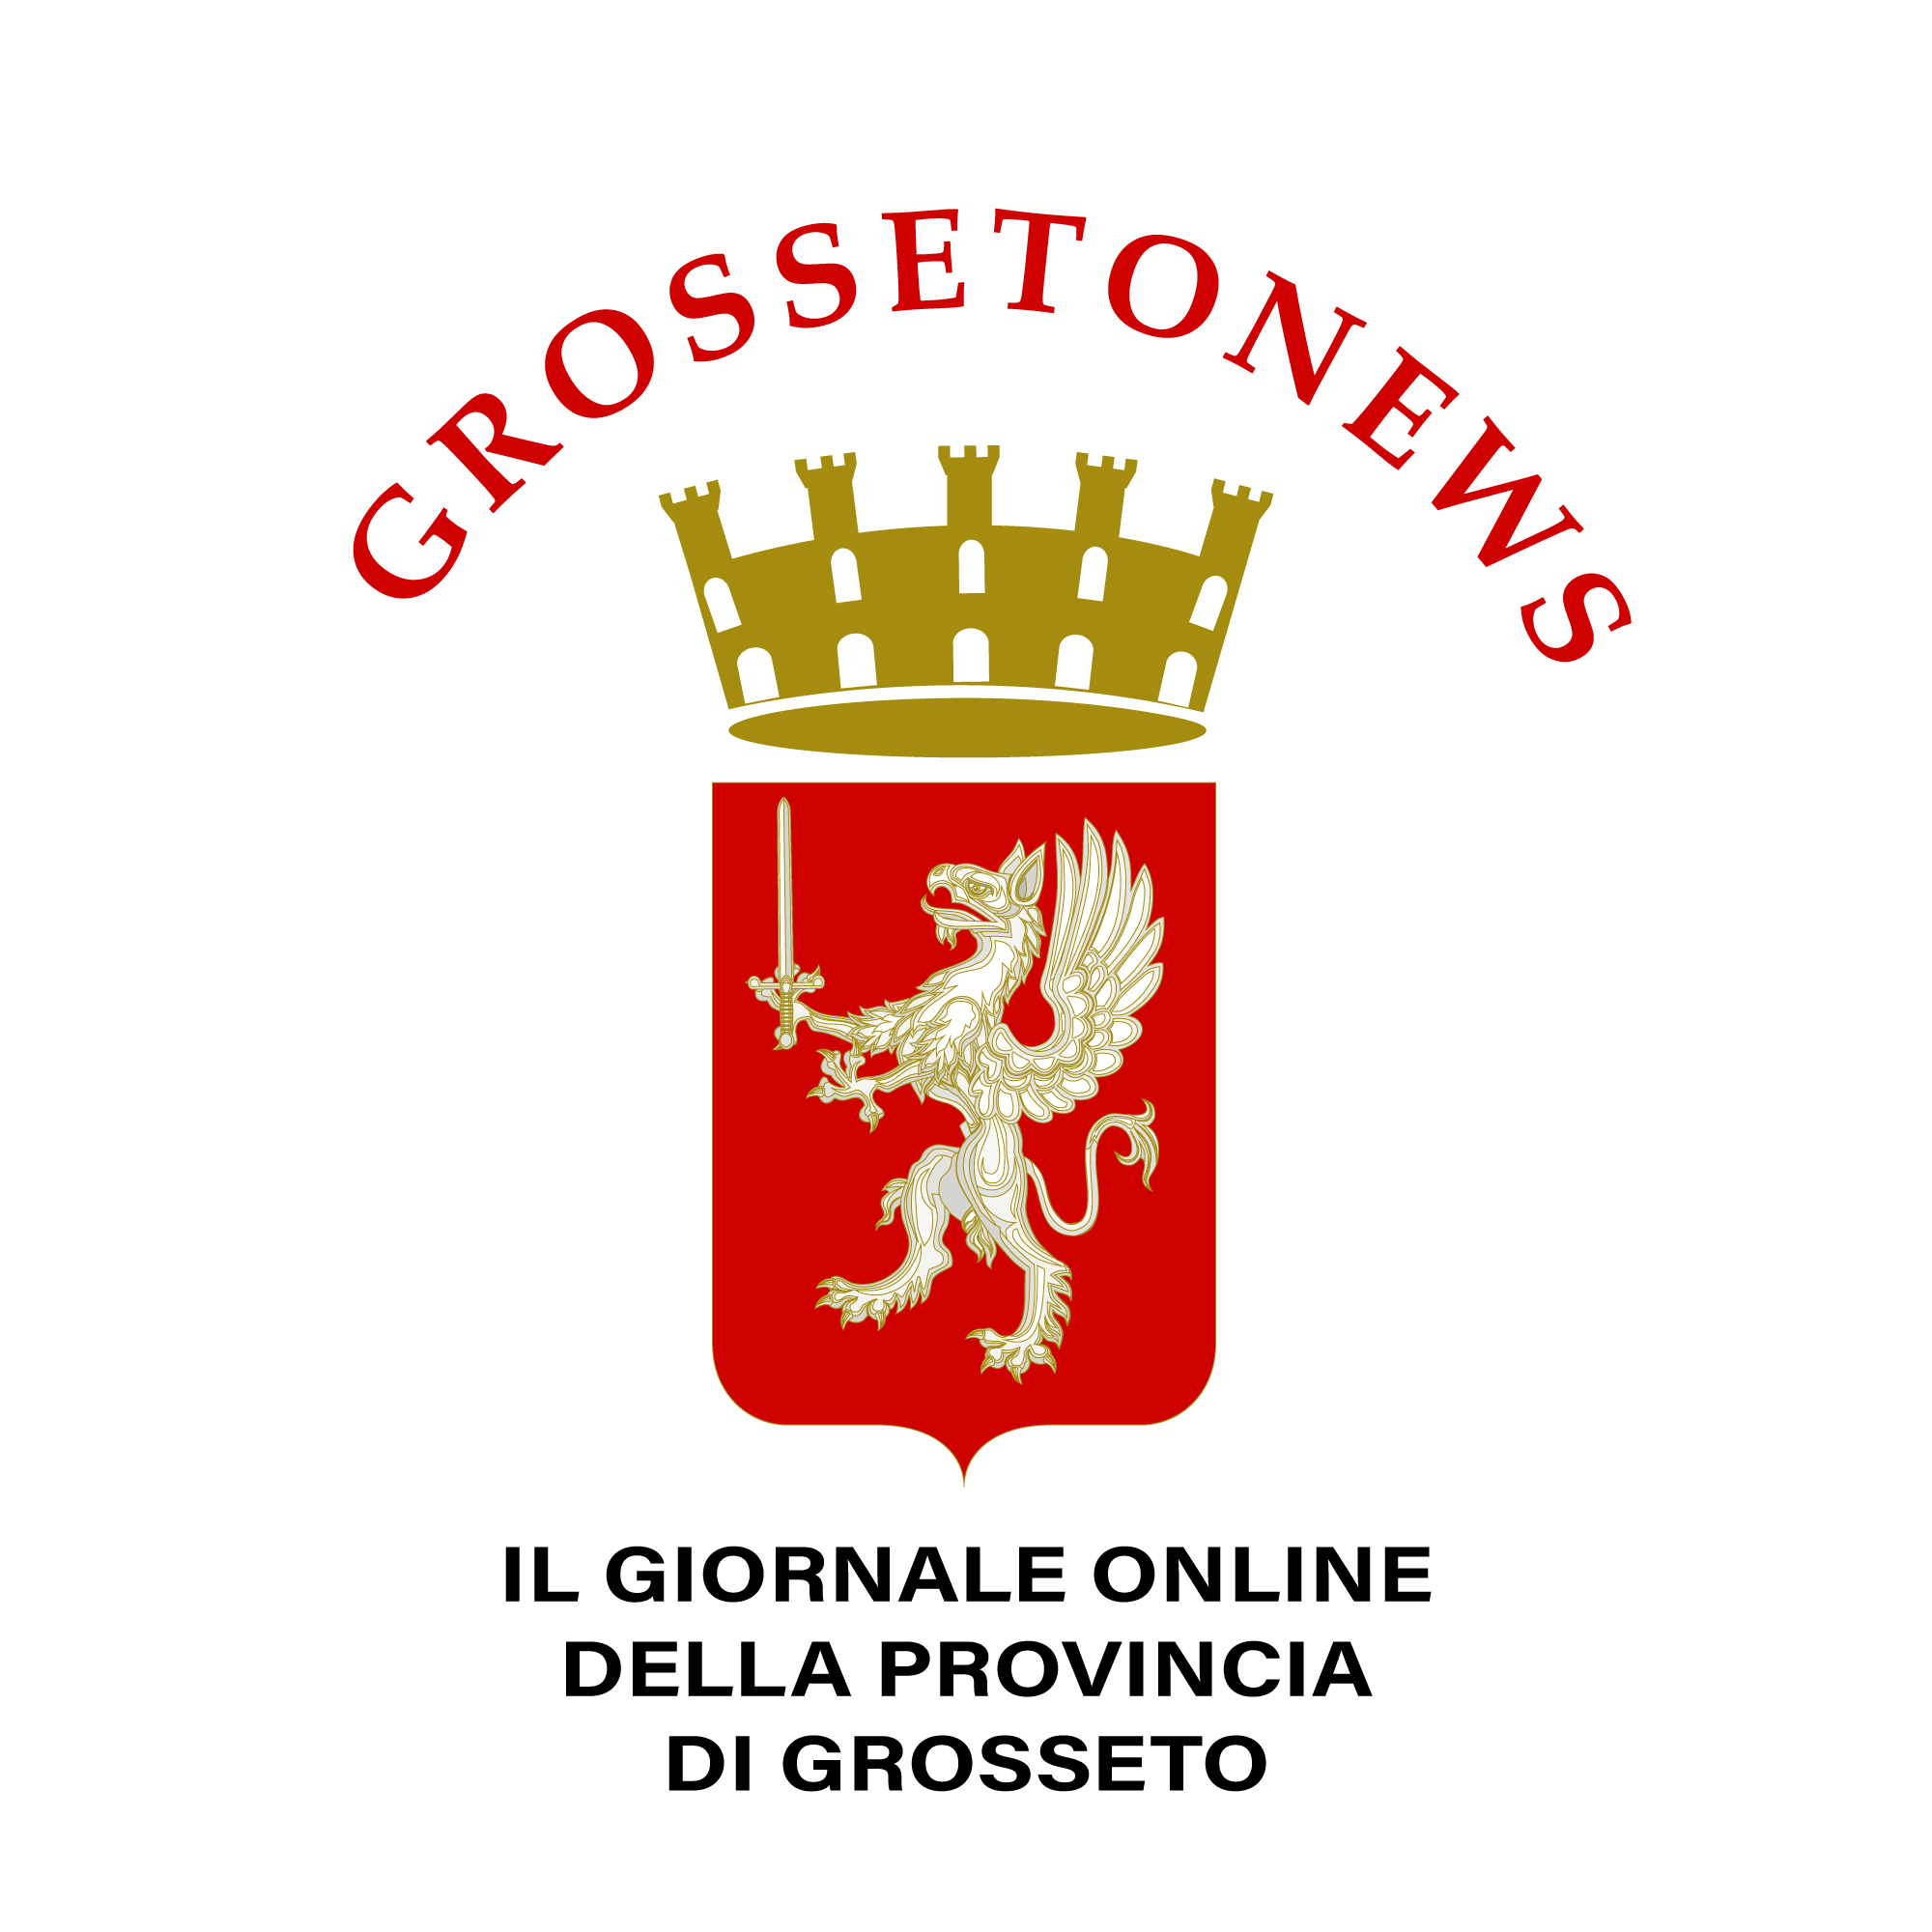 Notizie Grosseto - Giornale on line della provincia di Grosseto